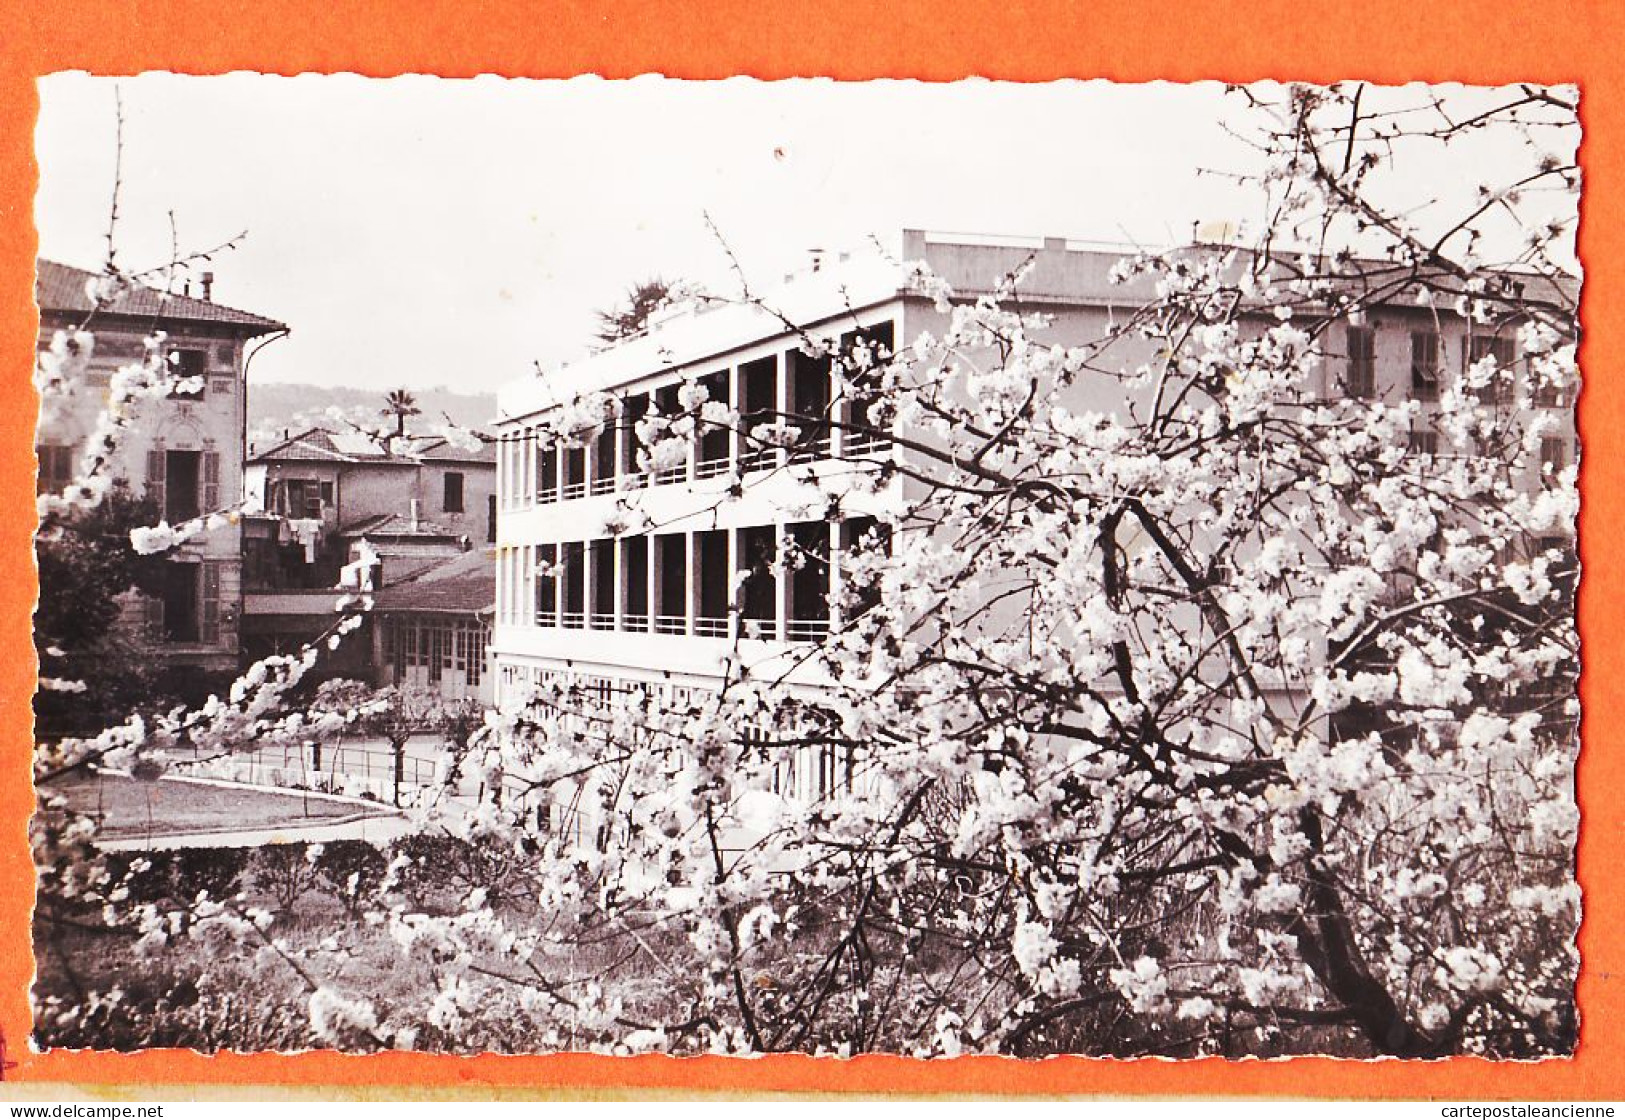 03507 / NICE Pavillon NOTRE-DAME N-D Foyer SAINT-DOMINIQUE Repos Convalescence Avenue ACACIAS 1950s Photo-Bromure - Salud, Hospitales